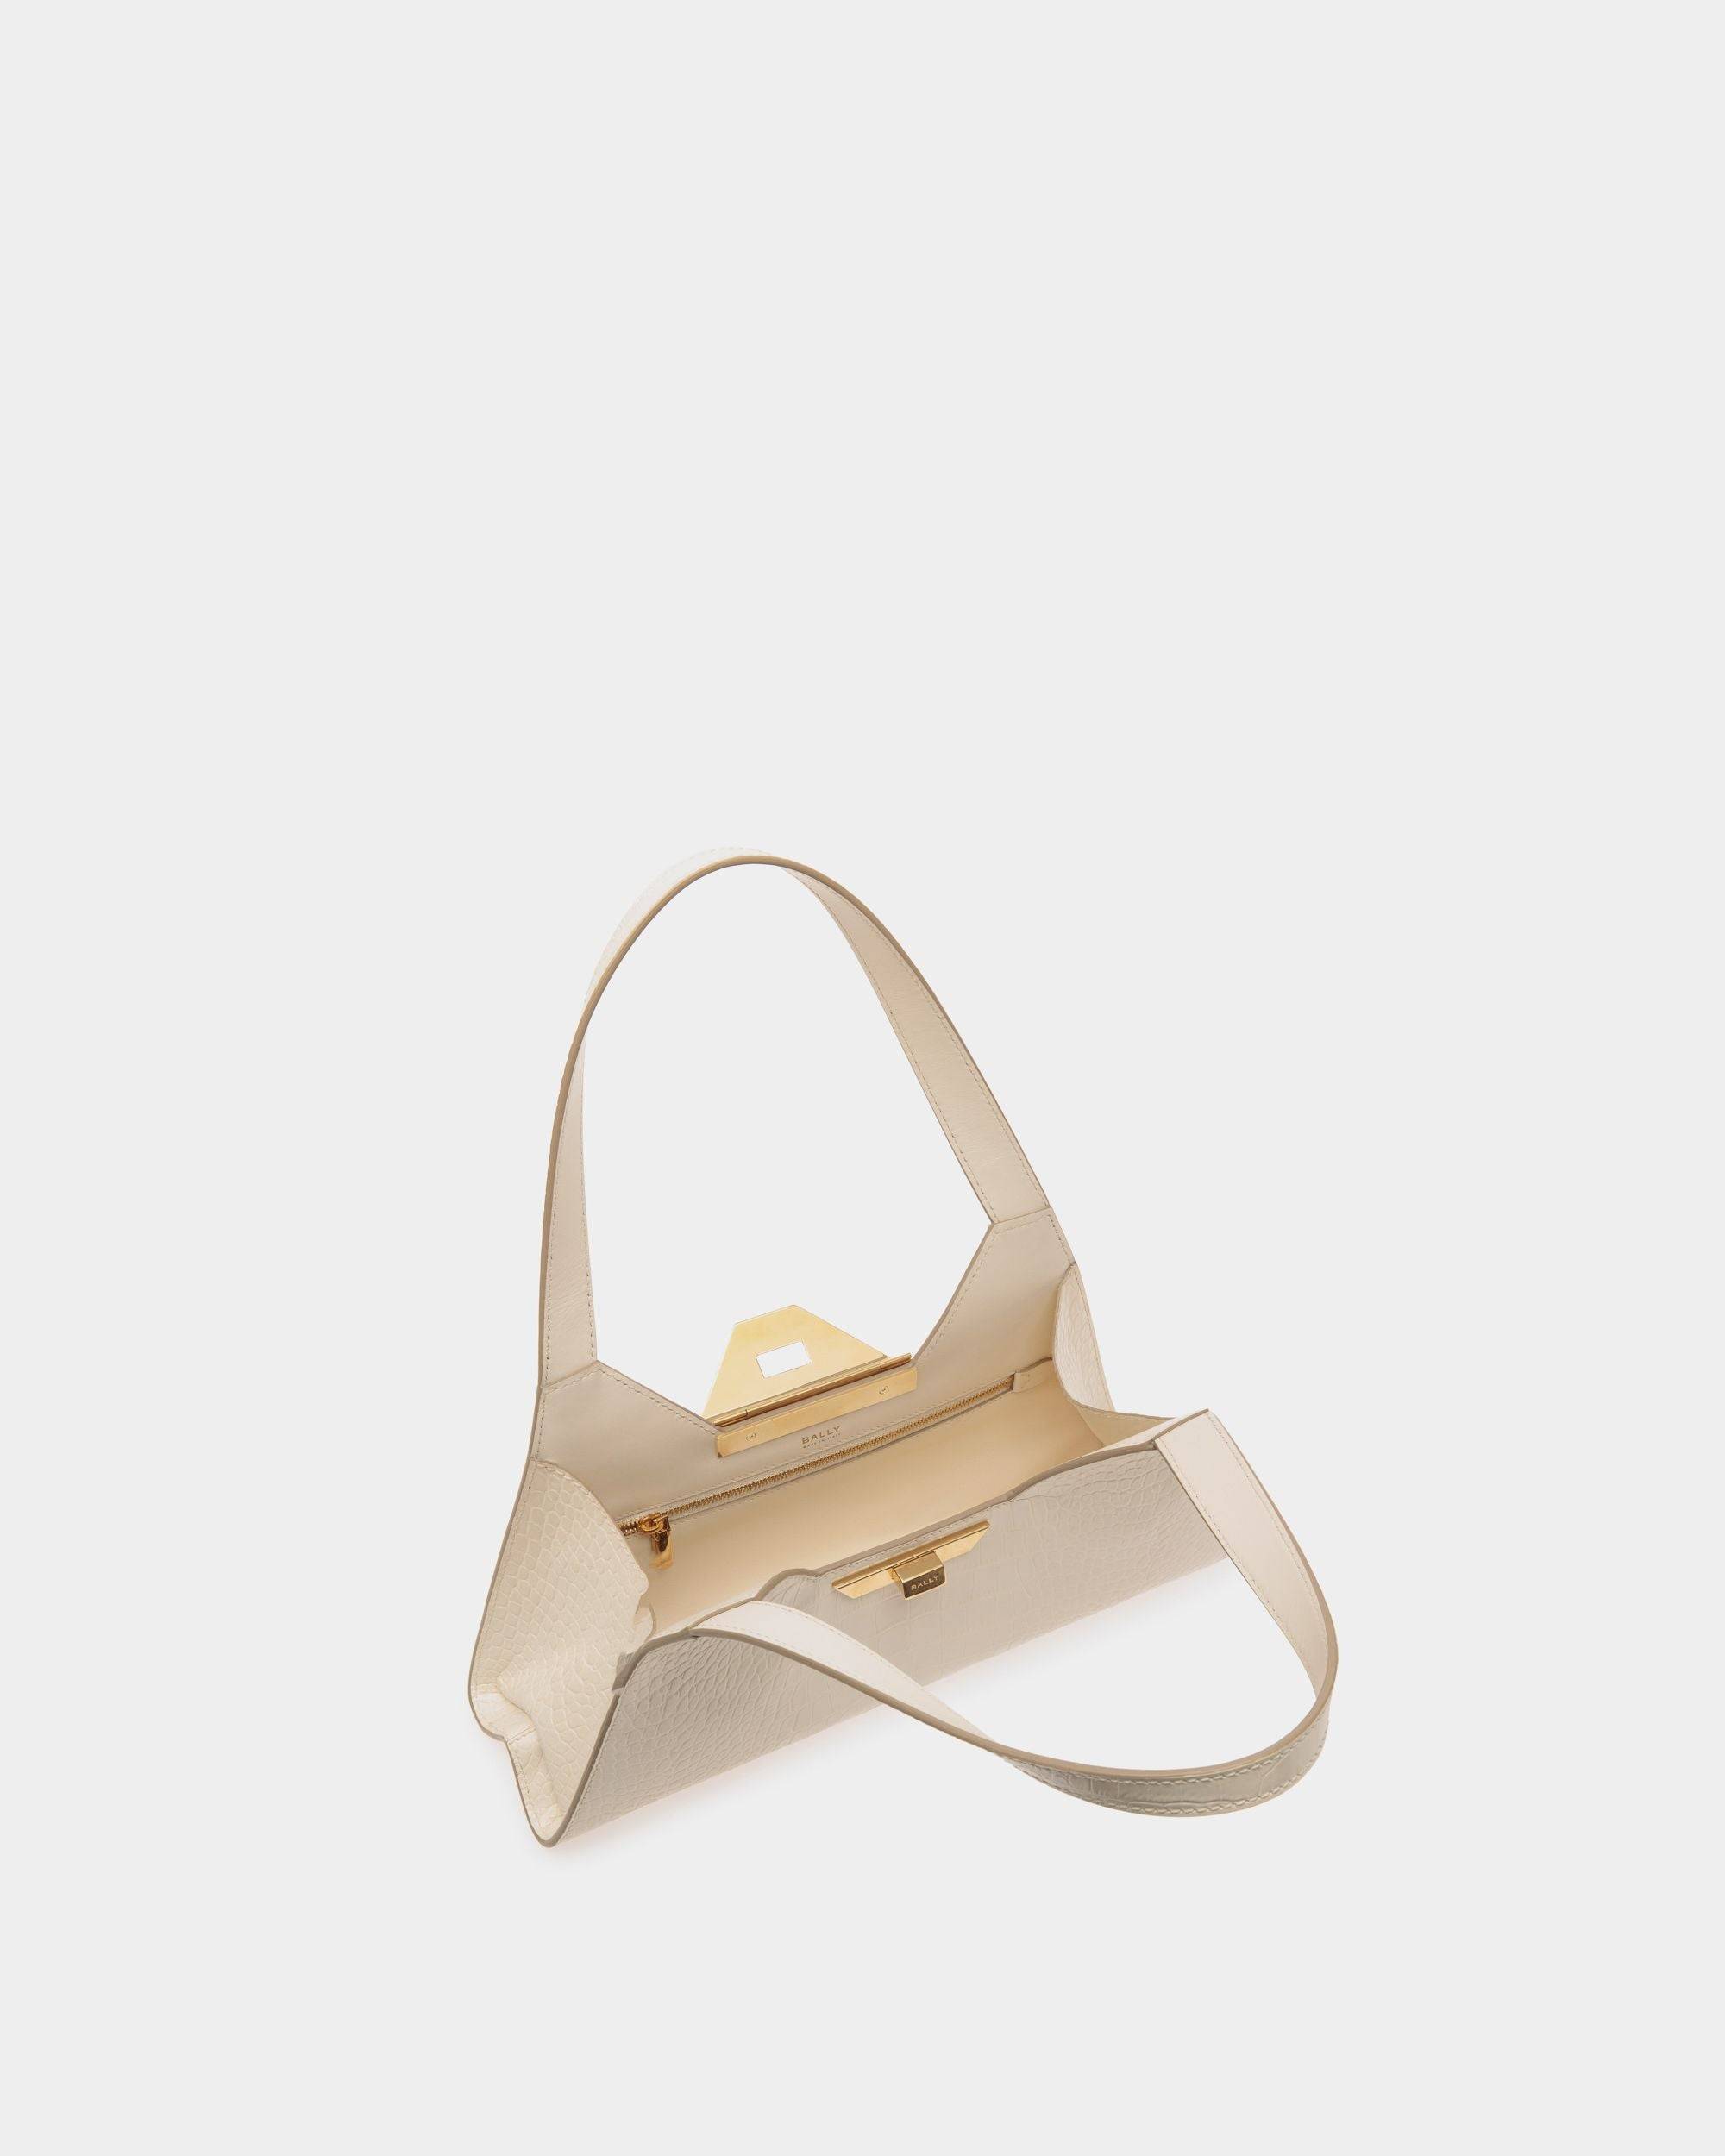 Tilt | Women's Small Shoulder Bag in White Crocodile Print Leather | Bally | Still Life Open / Inside